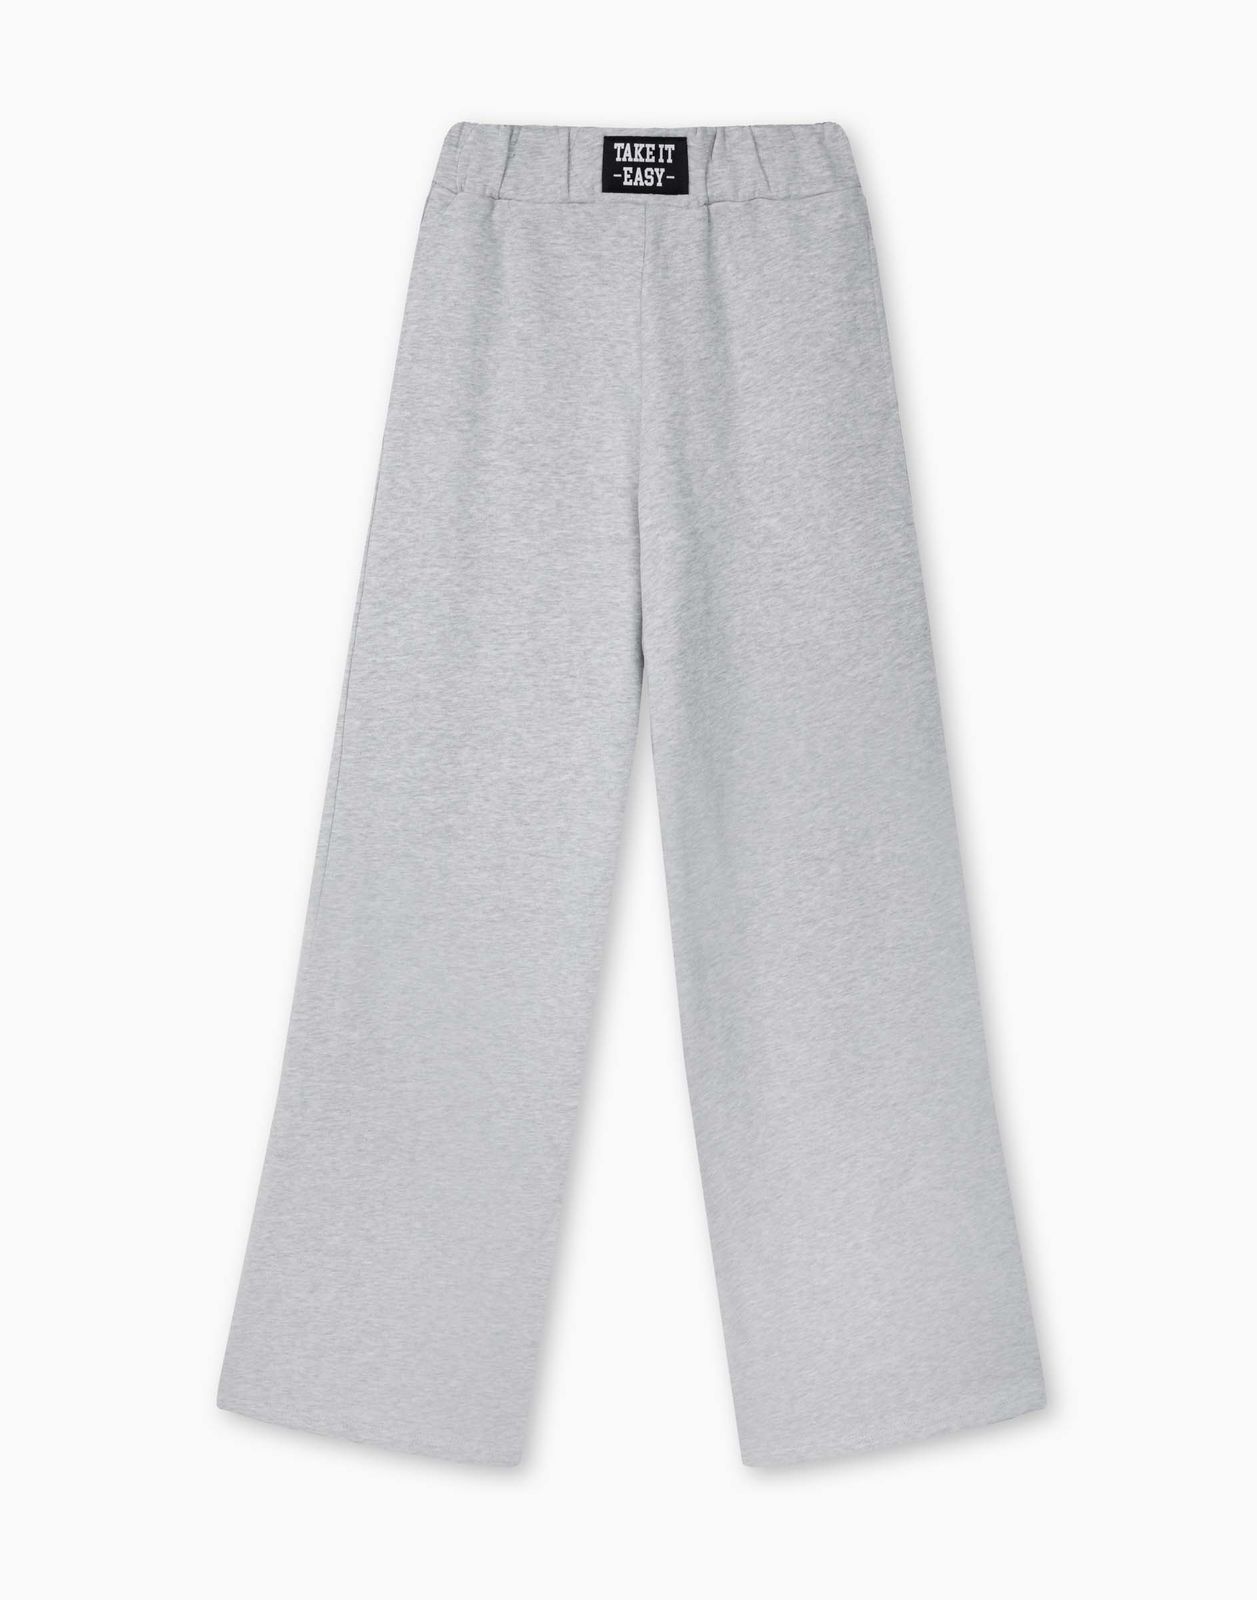 Спортивные брюки для девочки Gloria Jeans GAC022212 светло-серый меланж 11-12л/152